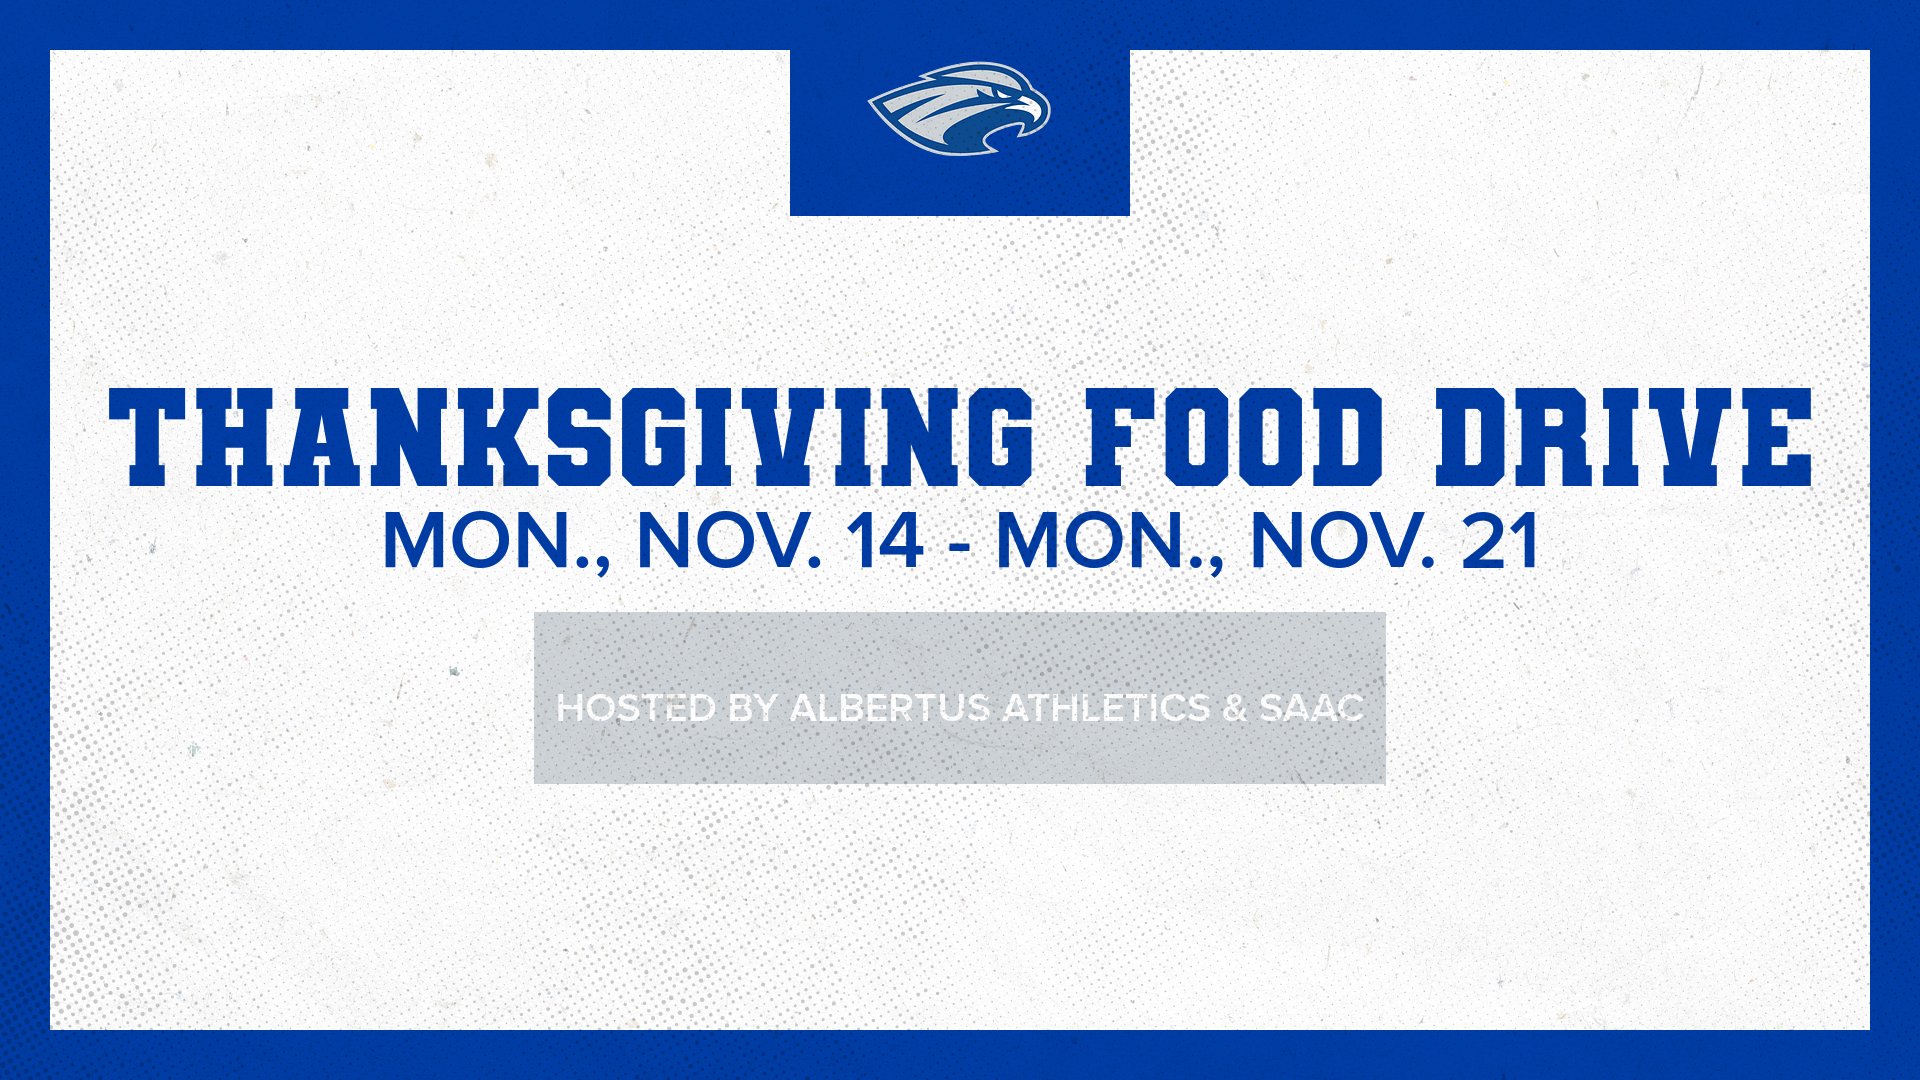 Albertus Magnus Athletics &amp; SAAC Sponsoring Thanksgiving Food Drive During St. Albert Week